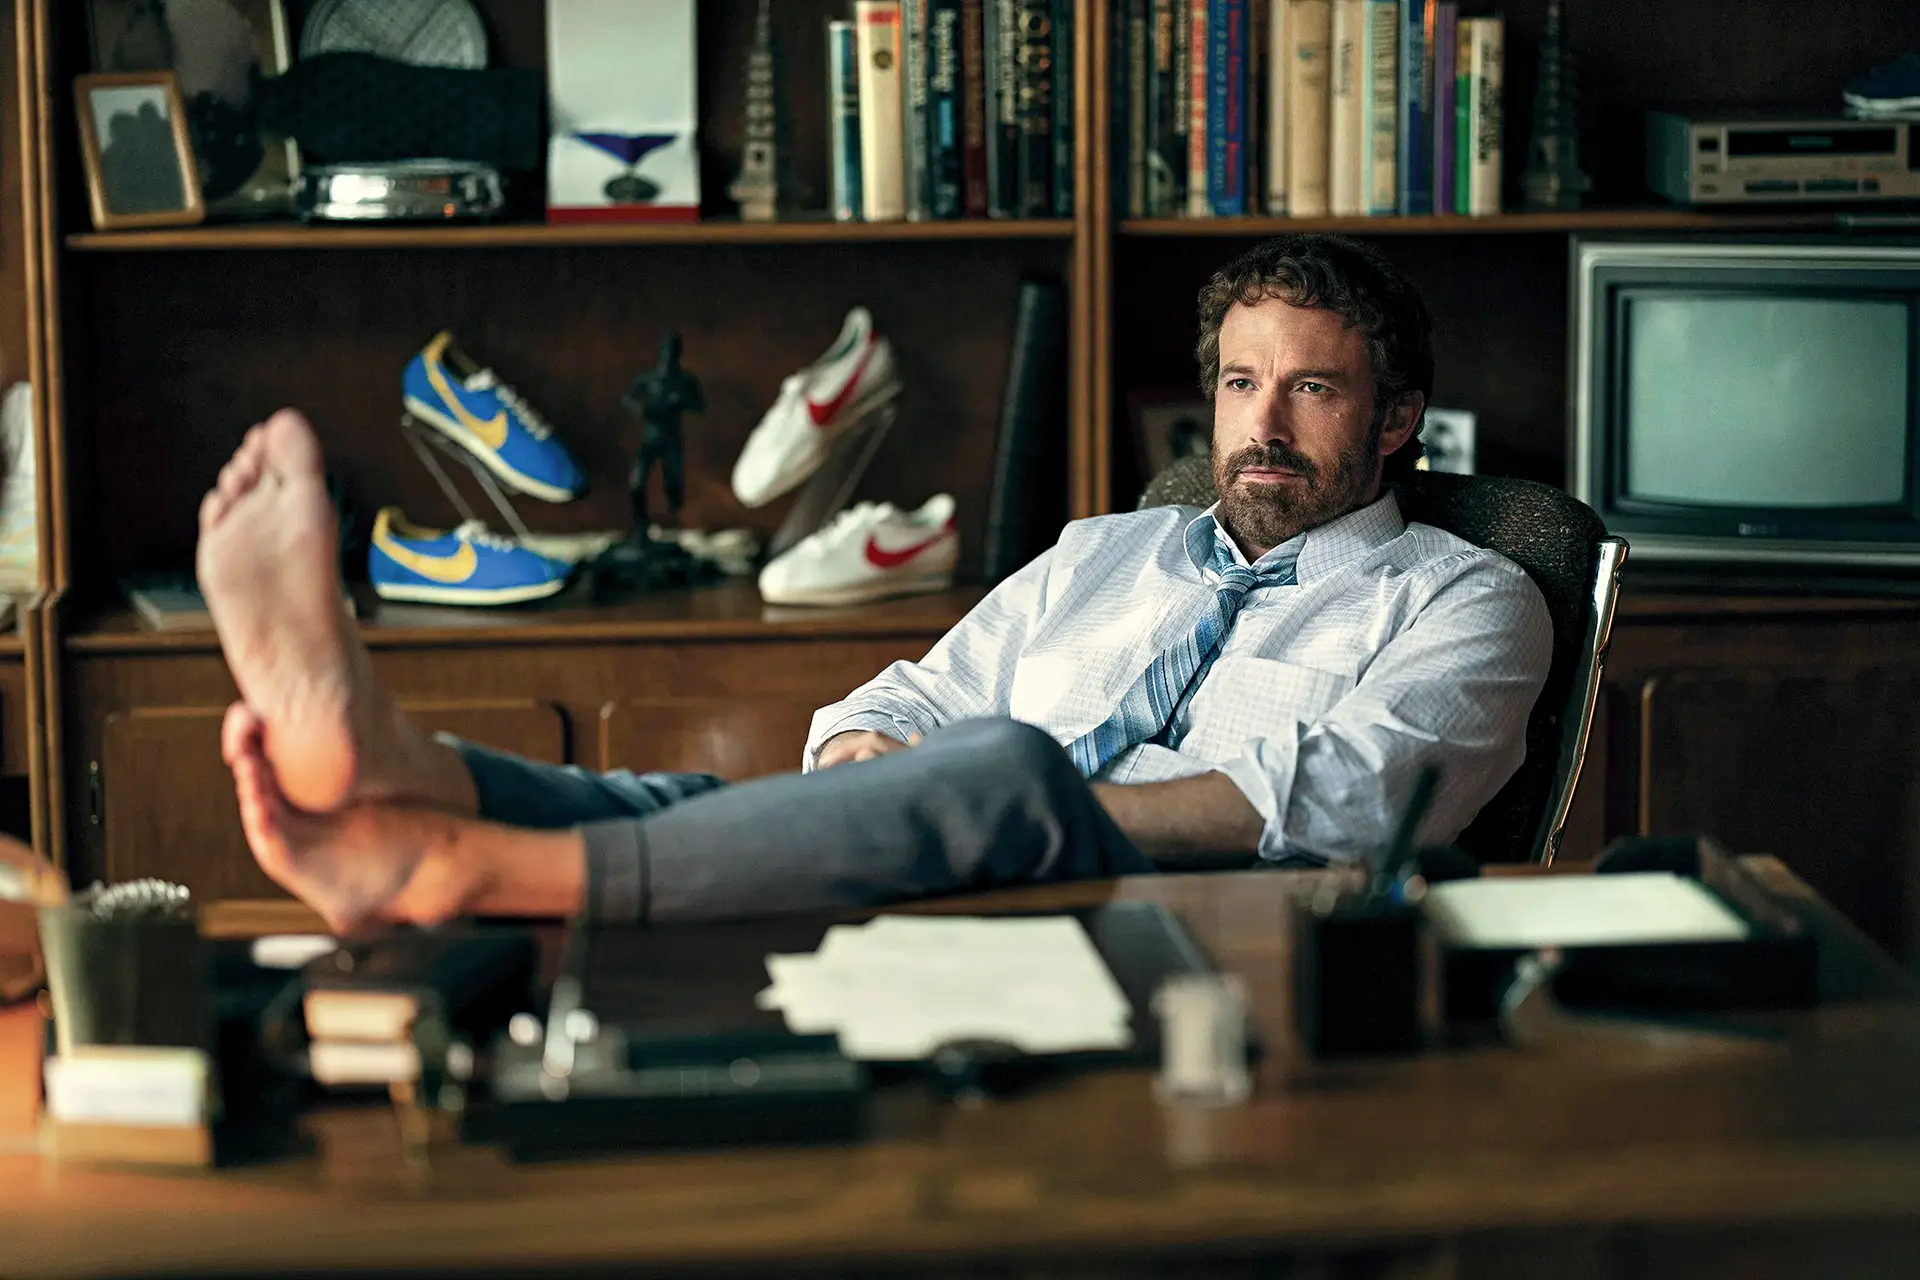 O realizador e ator, aqui no papel de Philip H. Knight, o cofundador e — à época dos acontecimentos — CEO da Nike